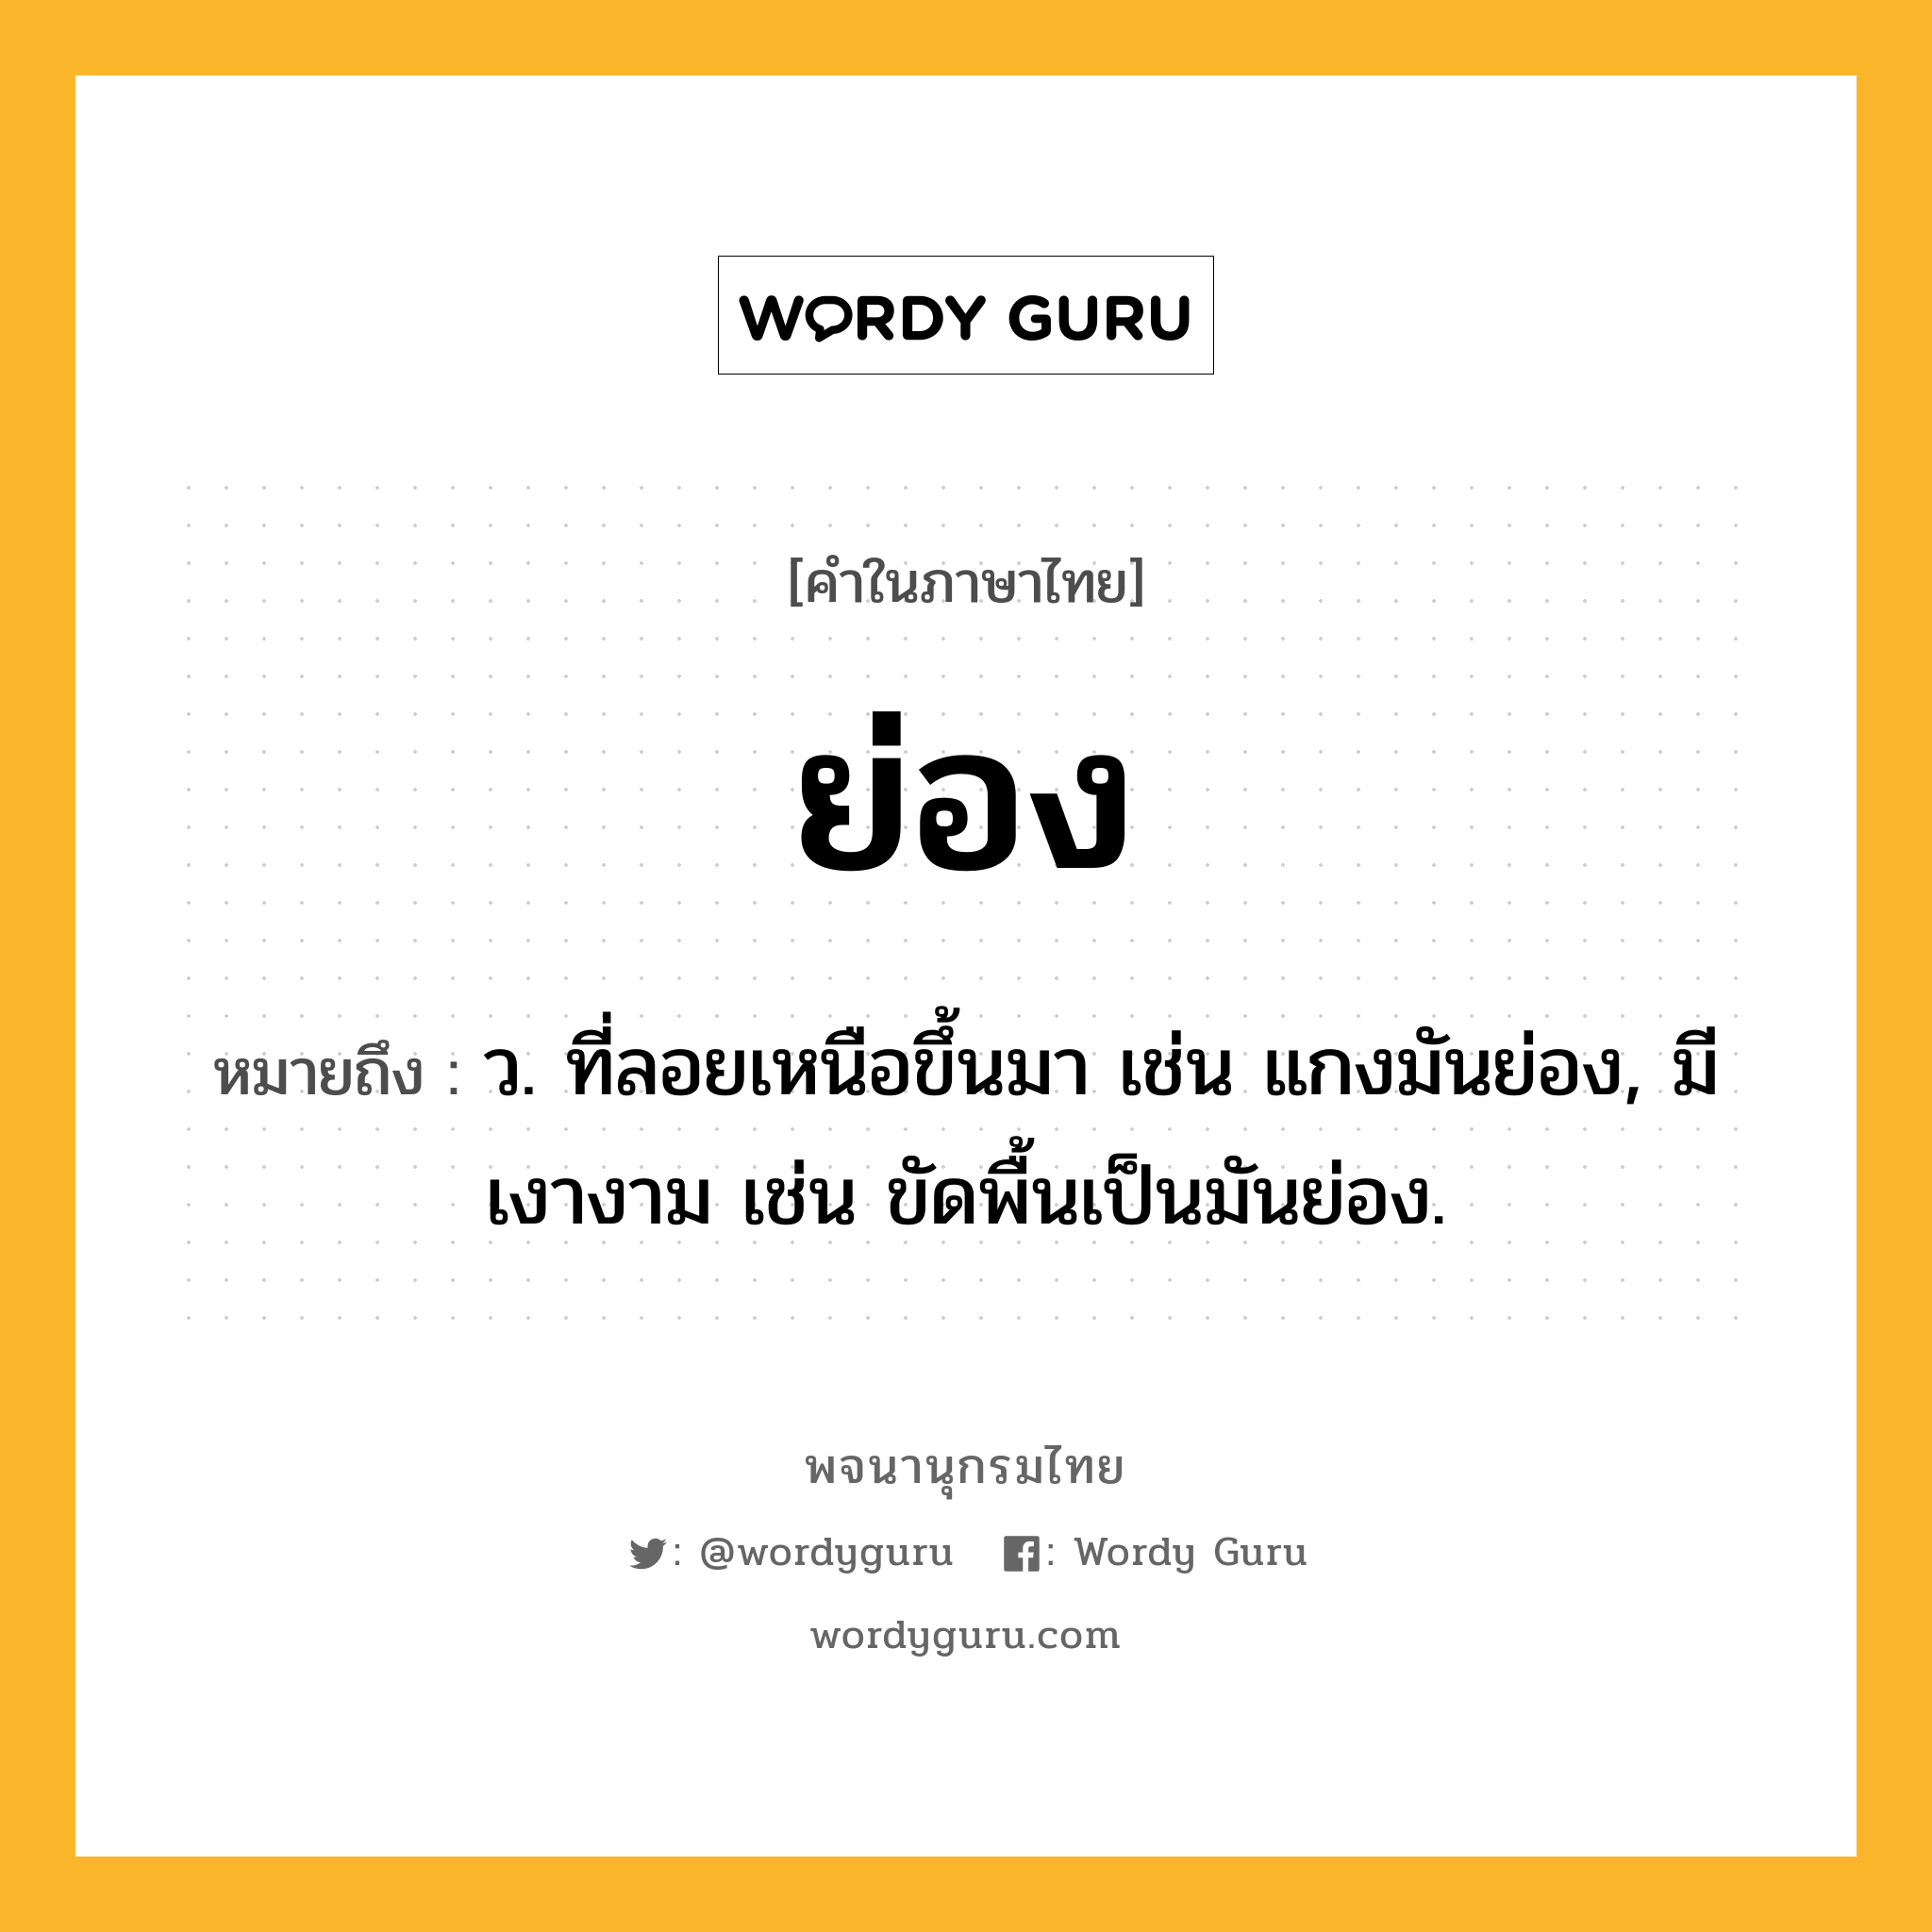 ย่อง หมายถึงอะไร?, คำในภาษาไทย ย่อง หมายถึง ว. ที่ลอยเหนือขึ้นมา เช่น แกงมันย่อง, มีเงางาม เช่น ขัดพื้นเป็นมันย่อง.